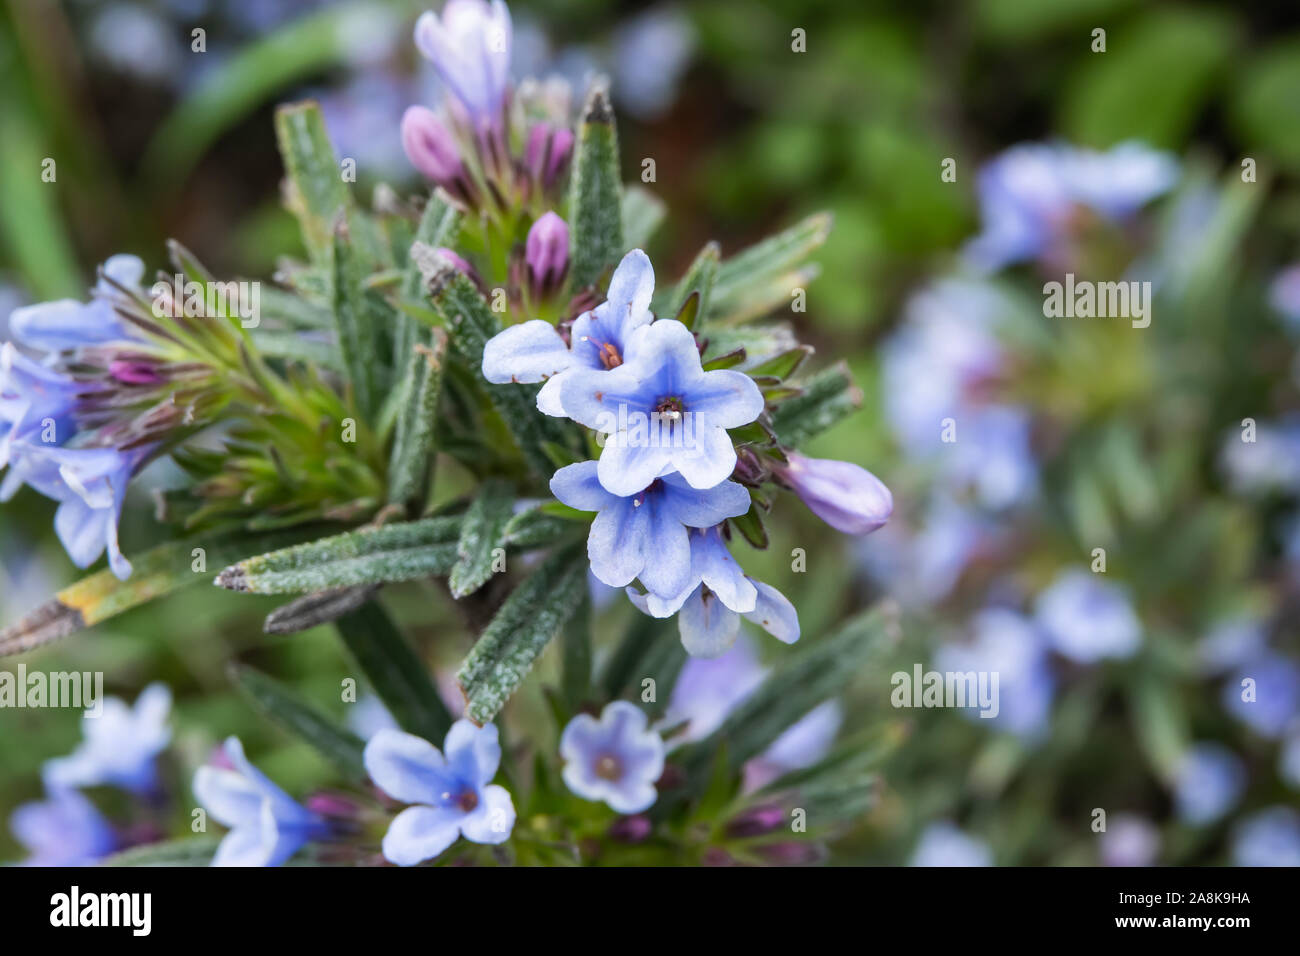 Zahn's Gromwell Flowers in Bloom in Winter Stock Photo